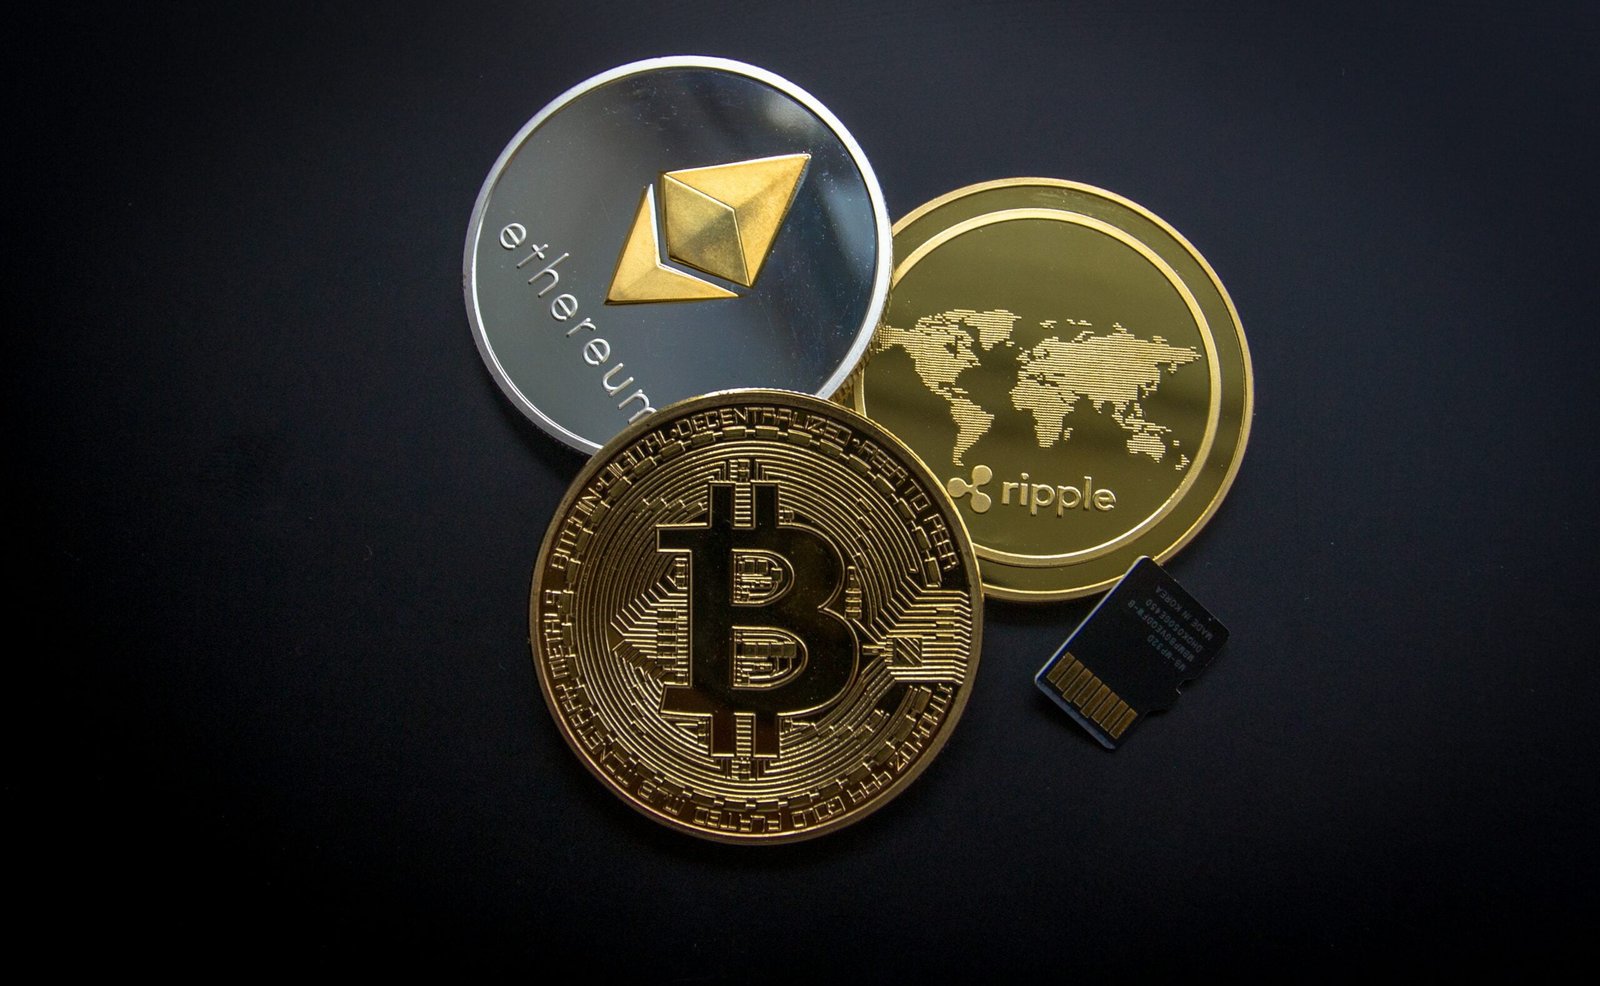 Bitcoin: Innovación en sistemas de pago